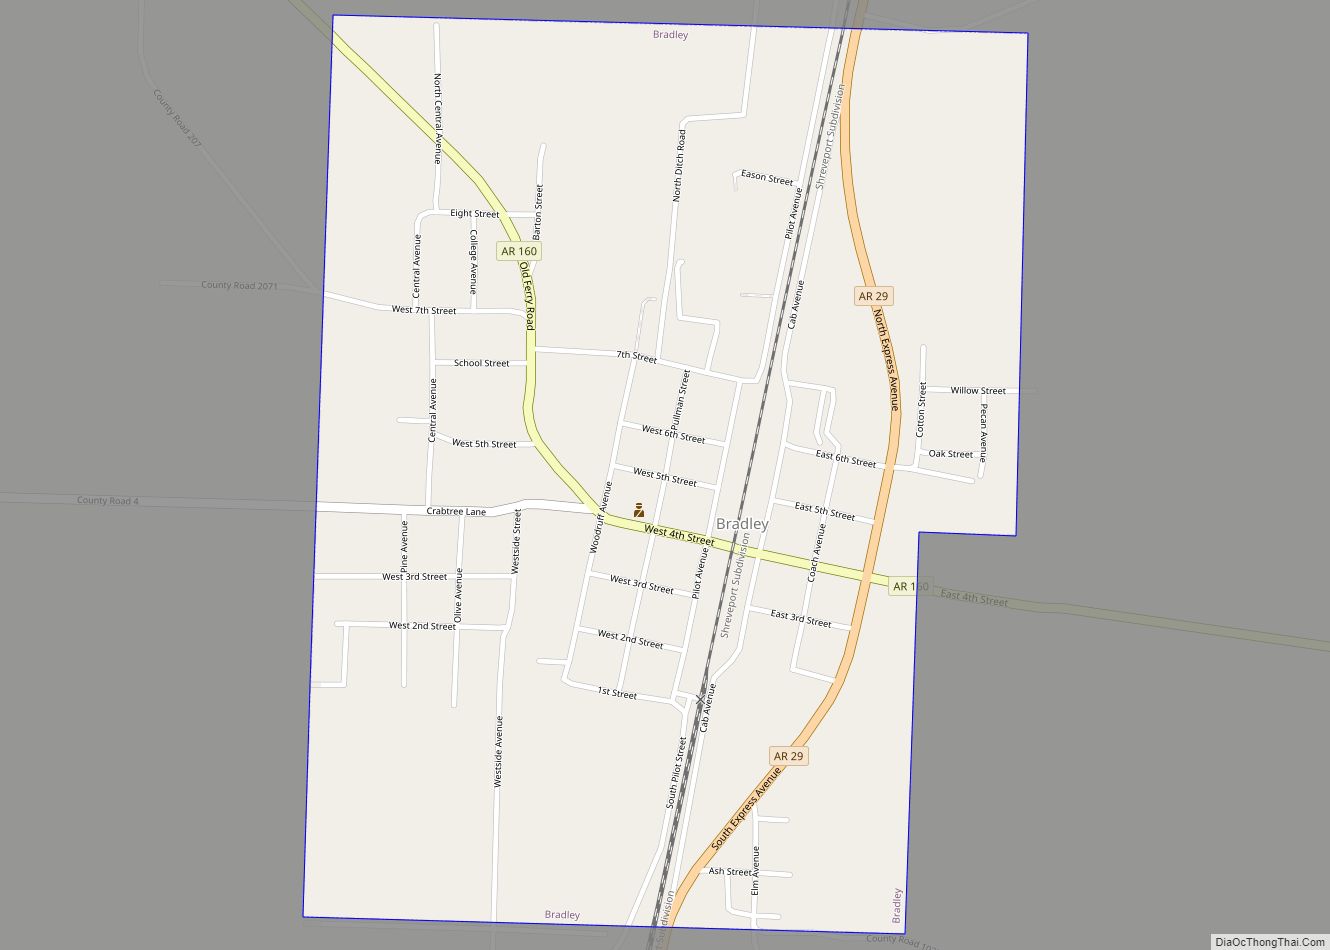 Map of Bradley city